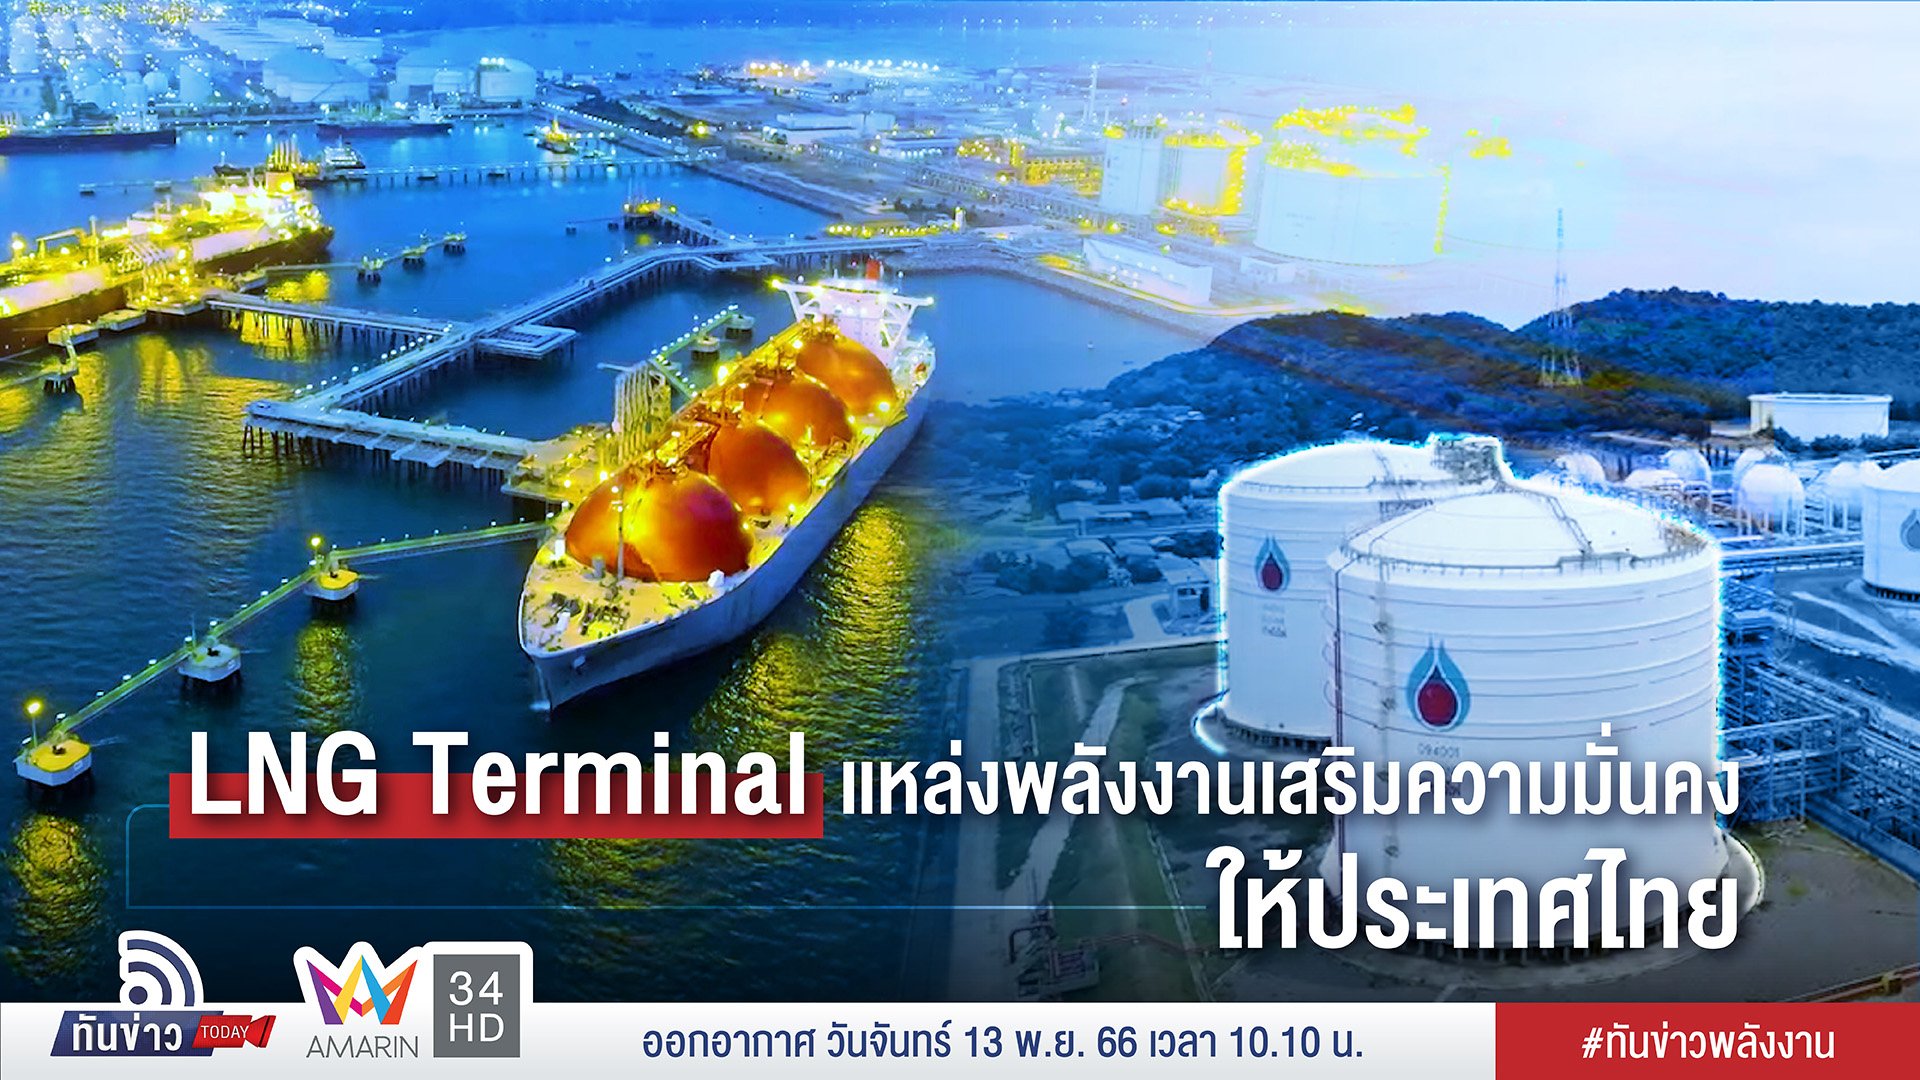 LNG Terminal แหล่งพลังงานเสริมความมั่นคงให้ประเทศไทย